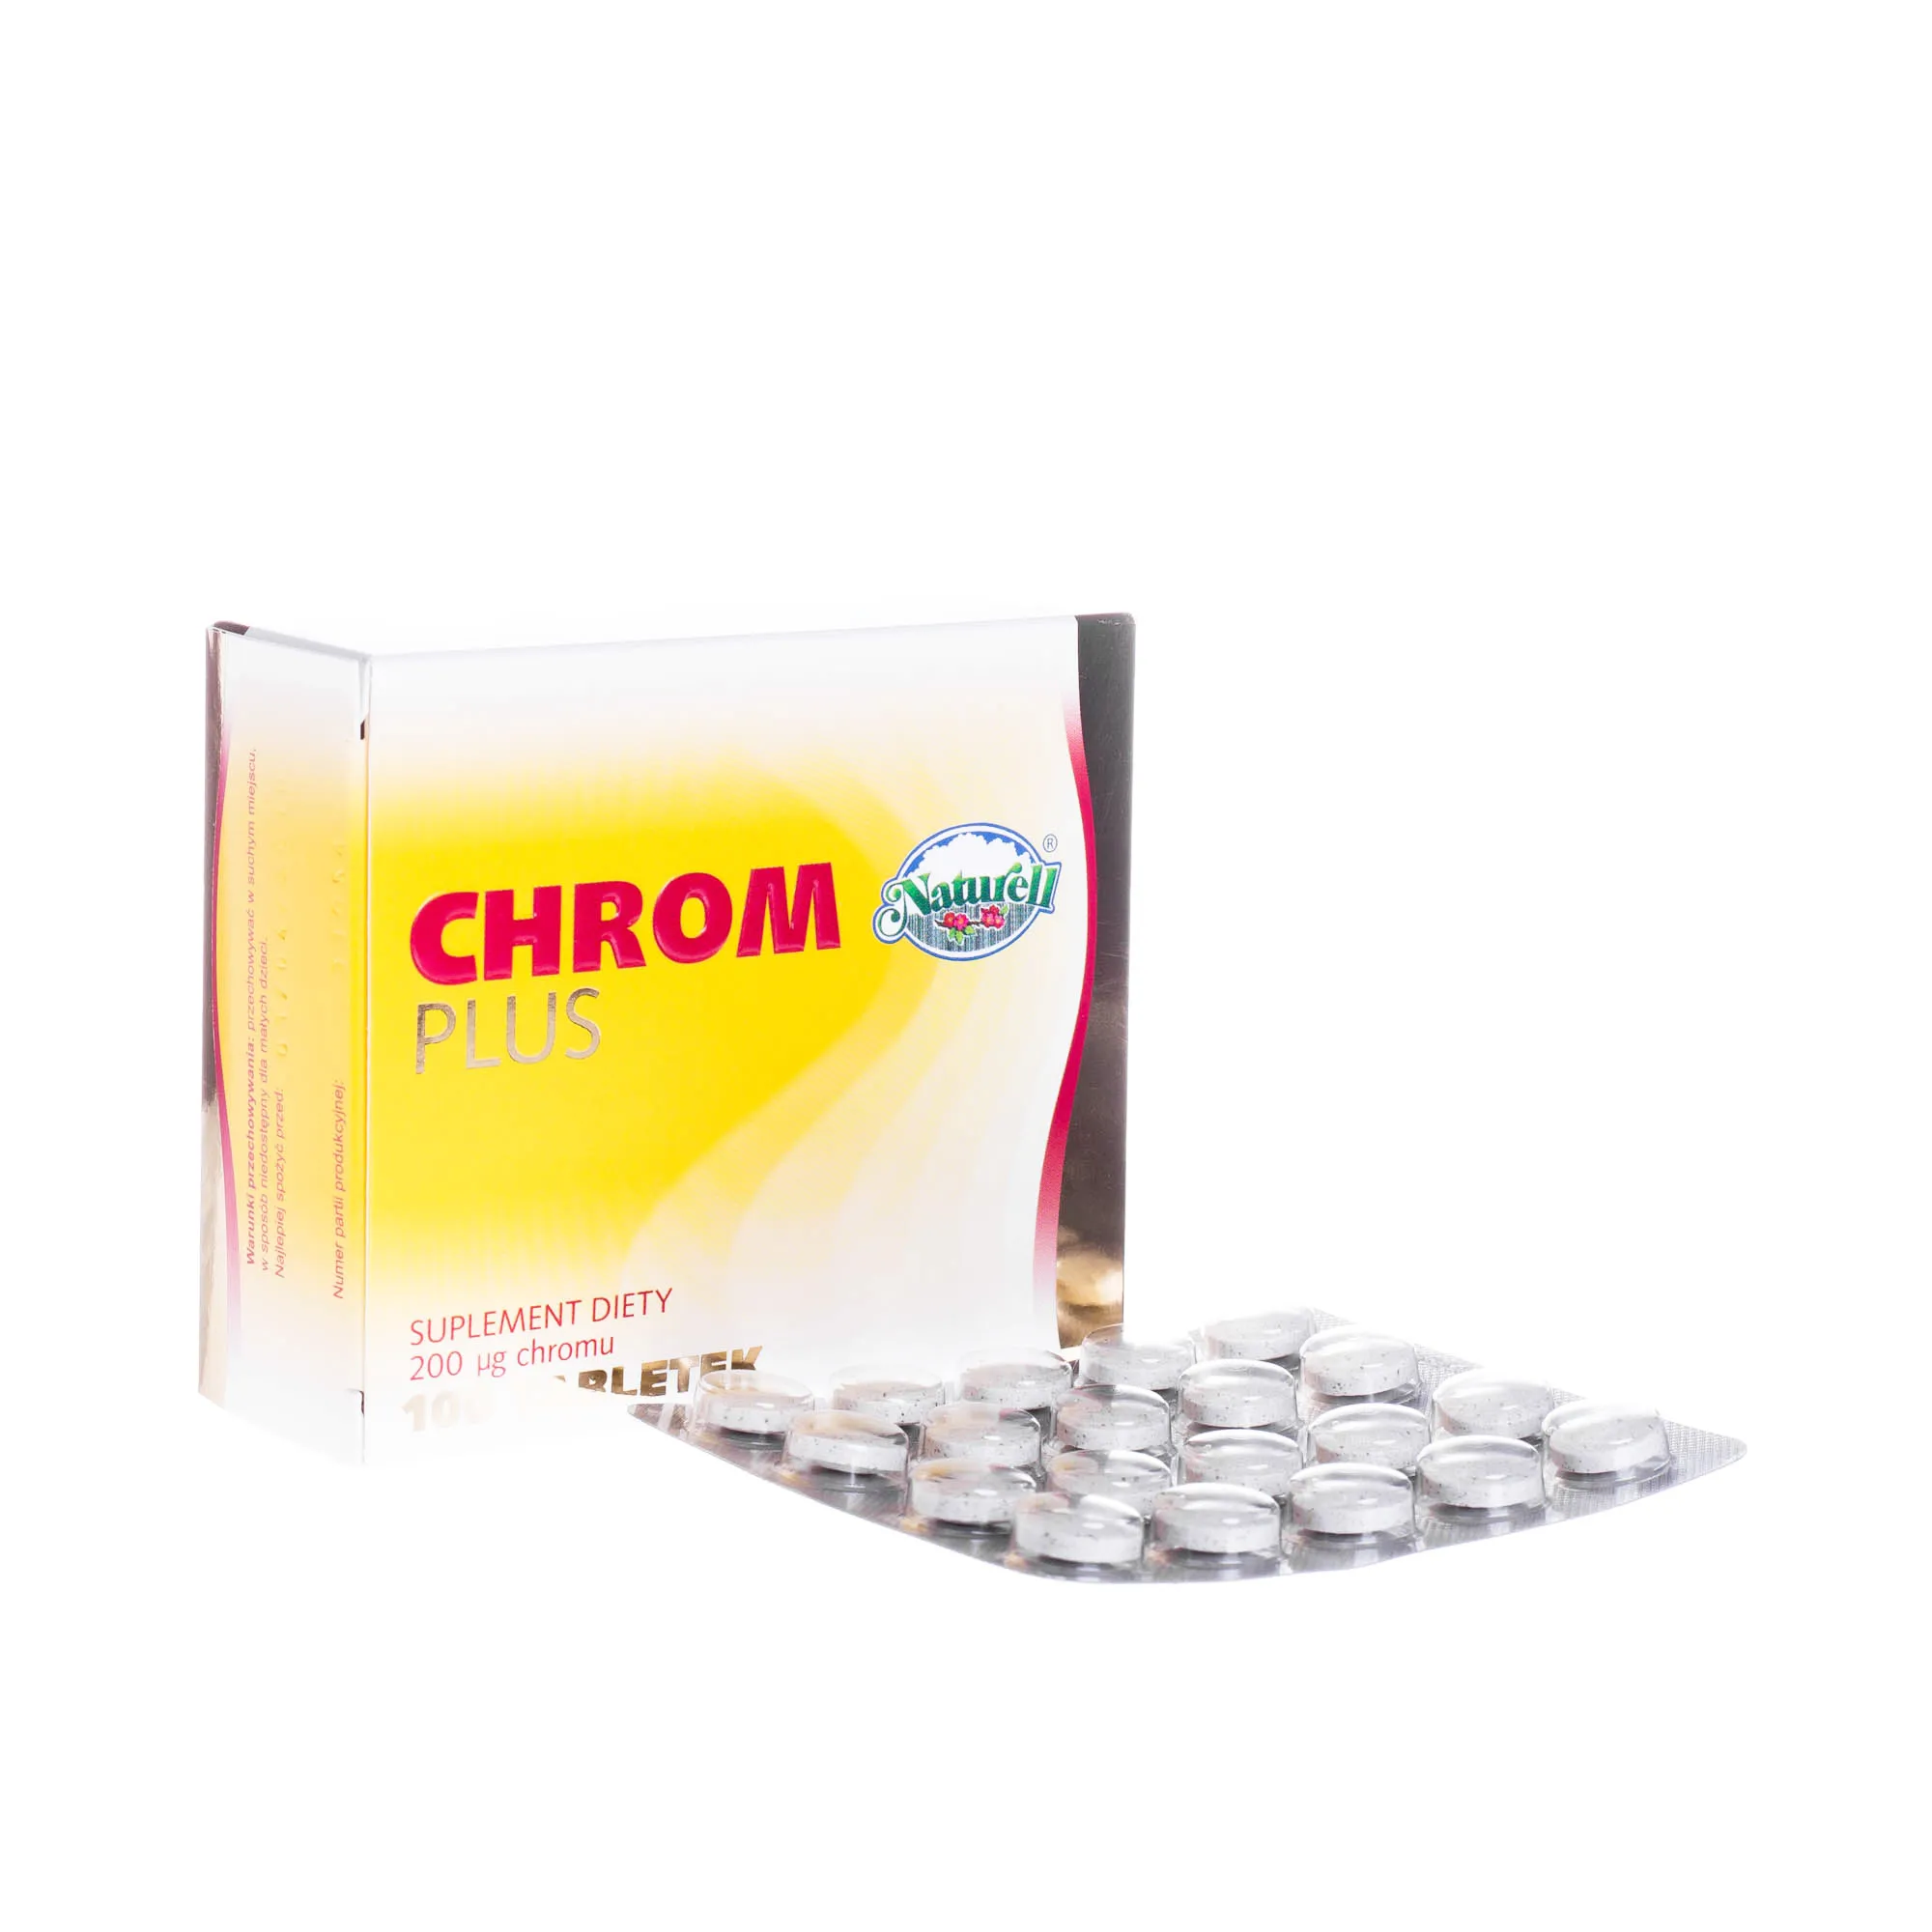 Chrom Plus suplement diety 200 μg Chromu, 100 tabletek